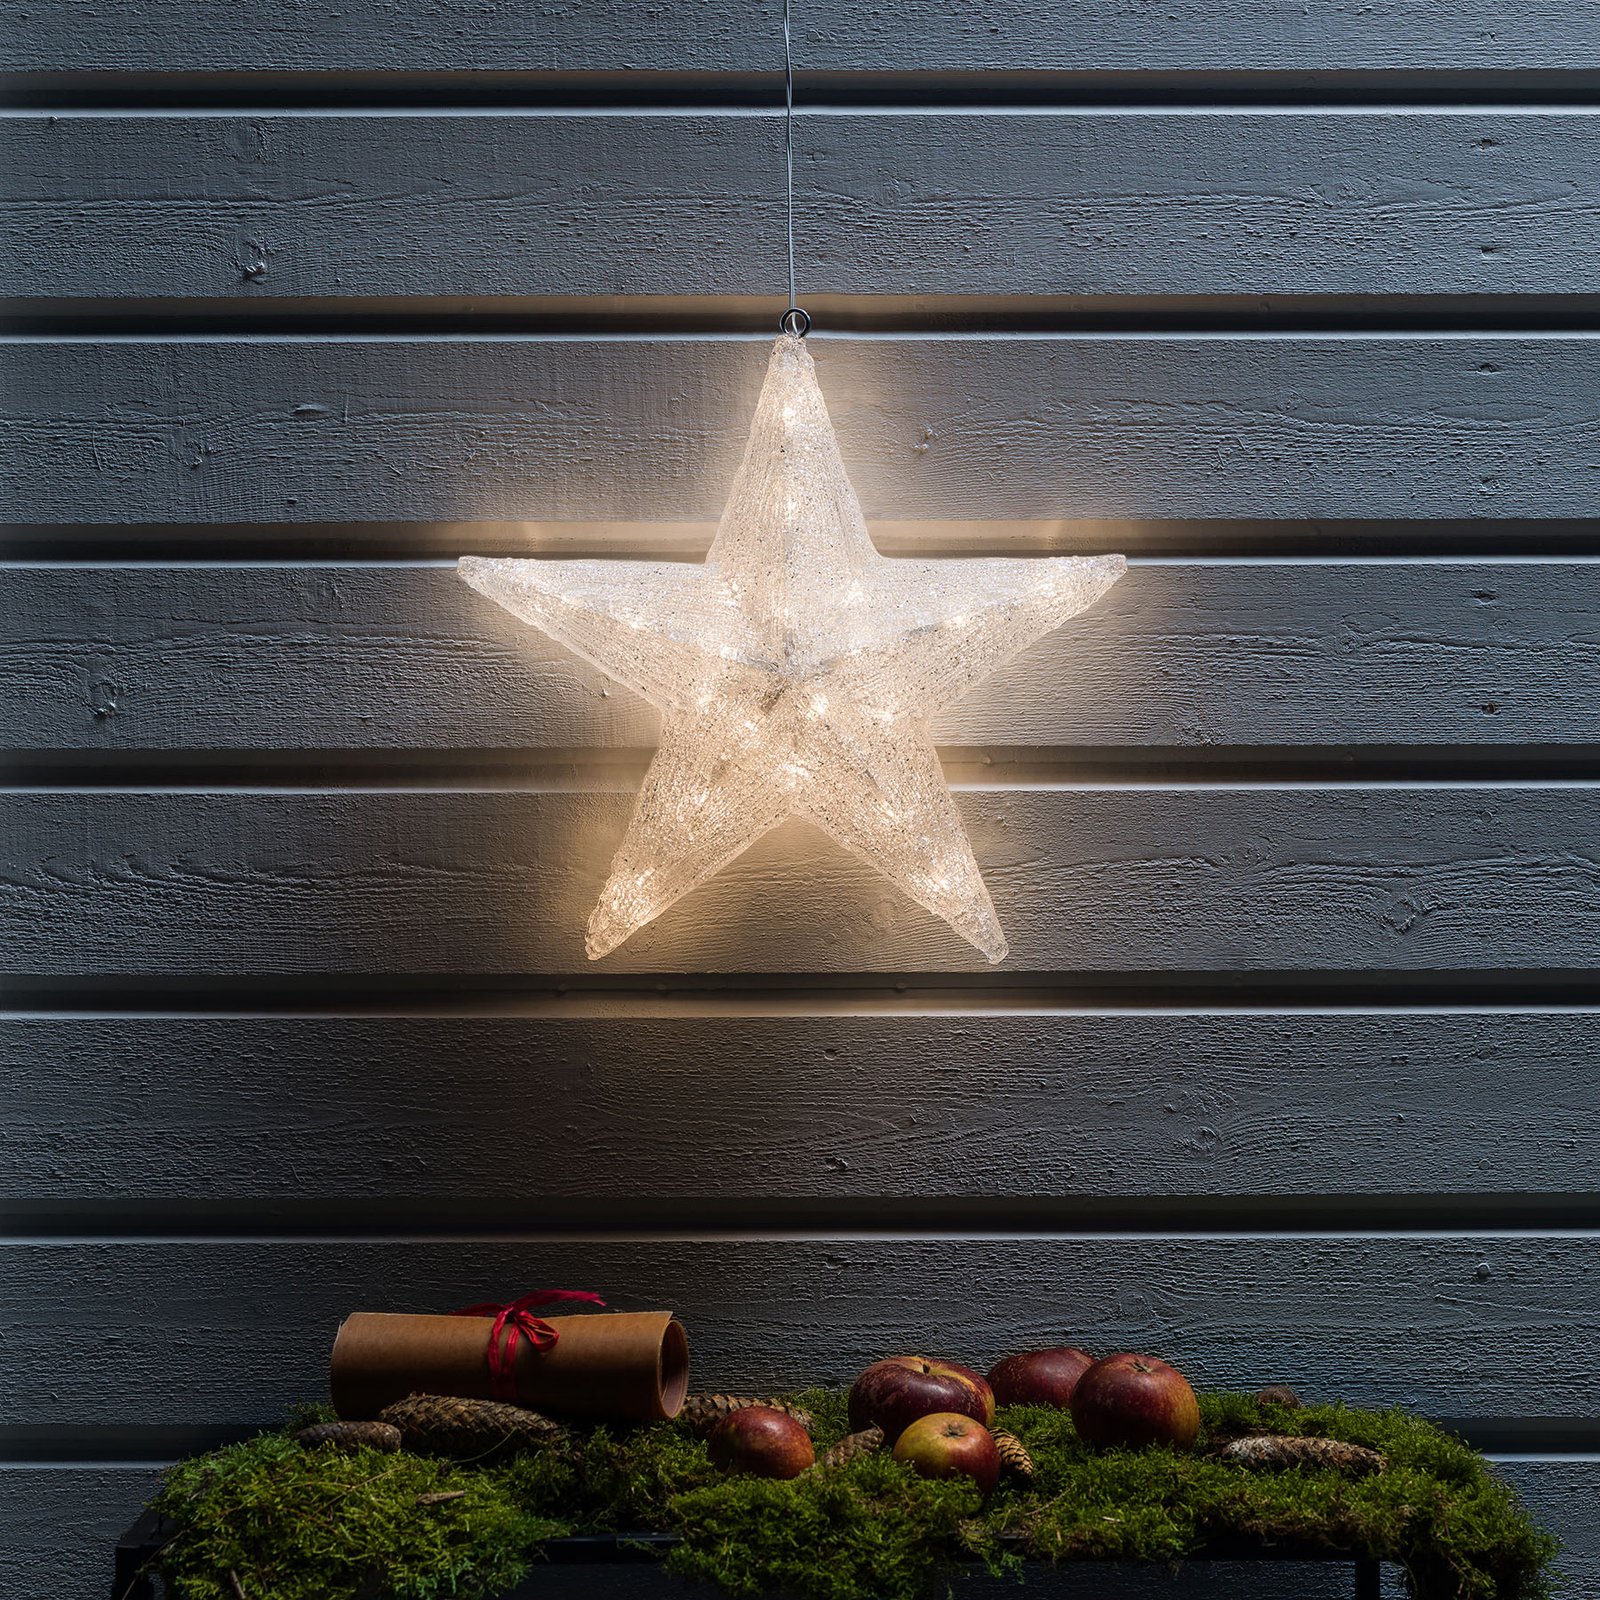 LED decoratieve ster voor buiten, Ø 40 cm